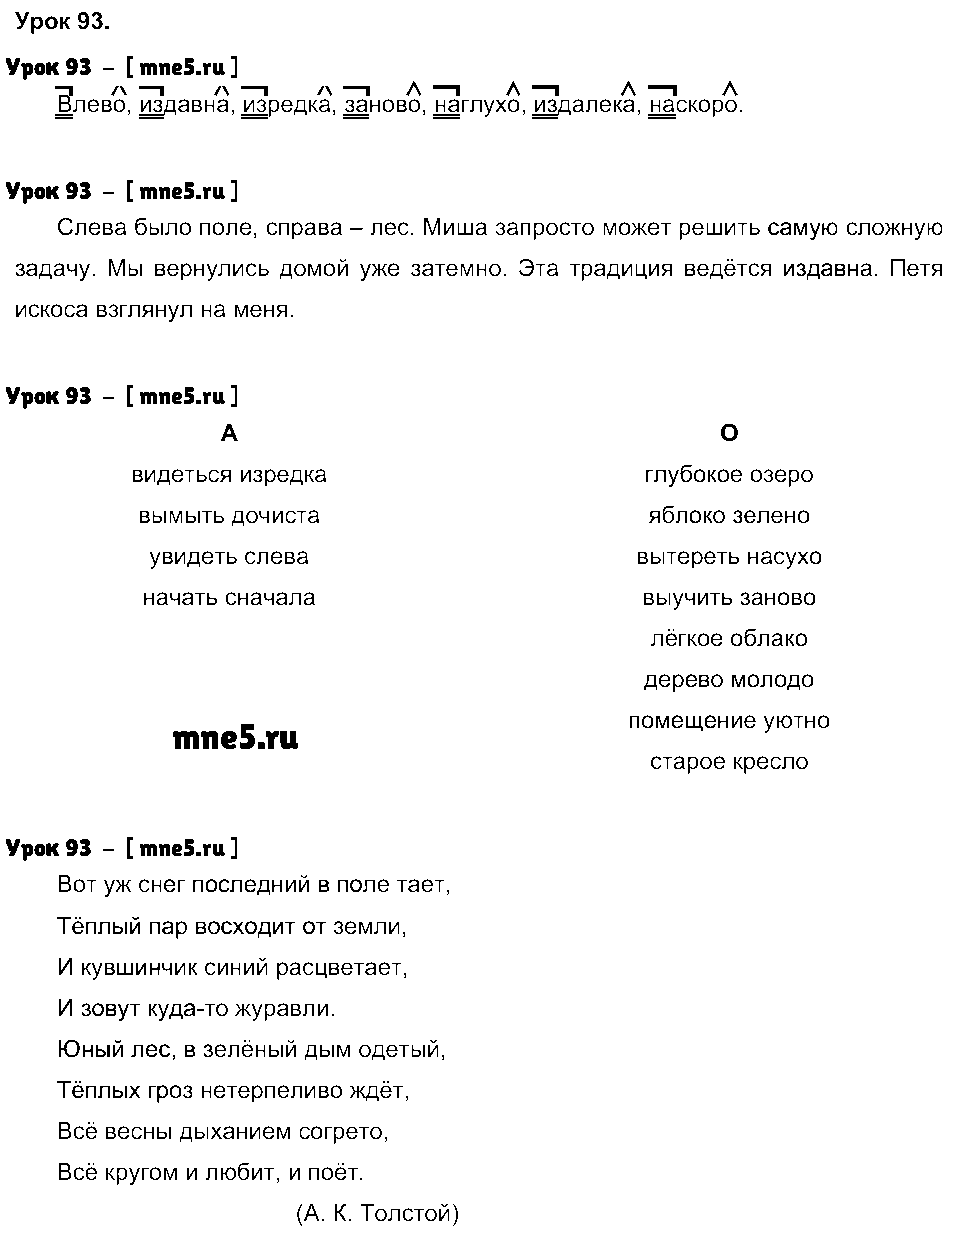 ГДЗ Русский язык 4 класс - Урок 93